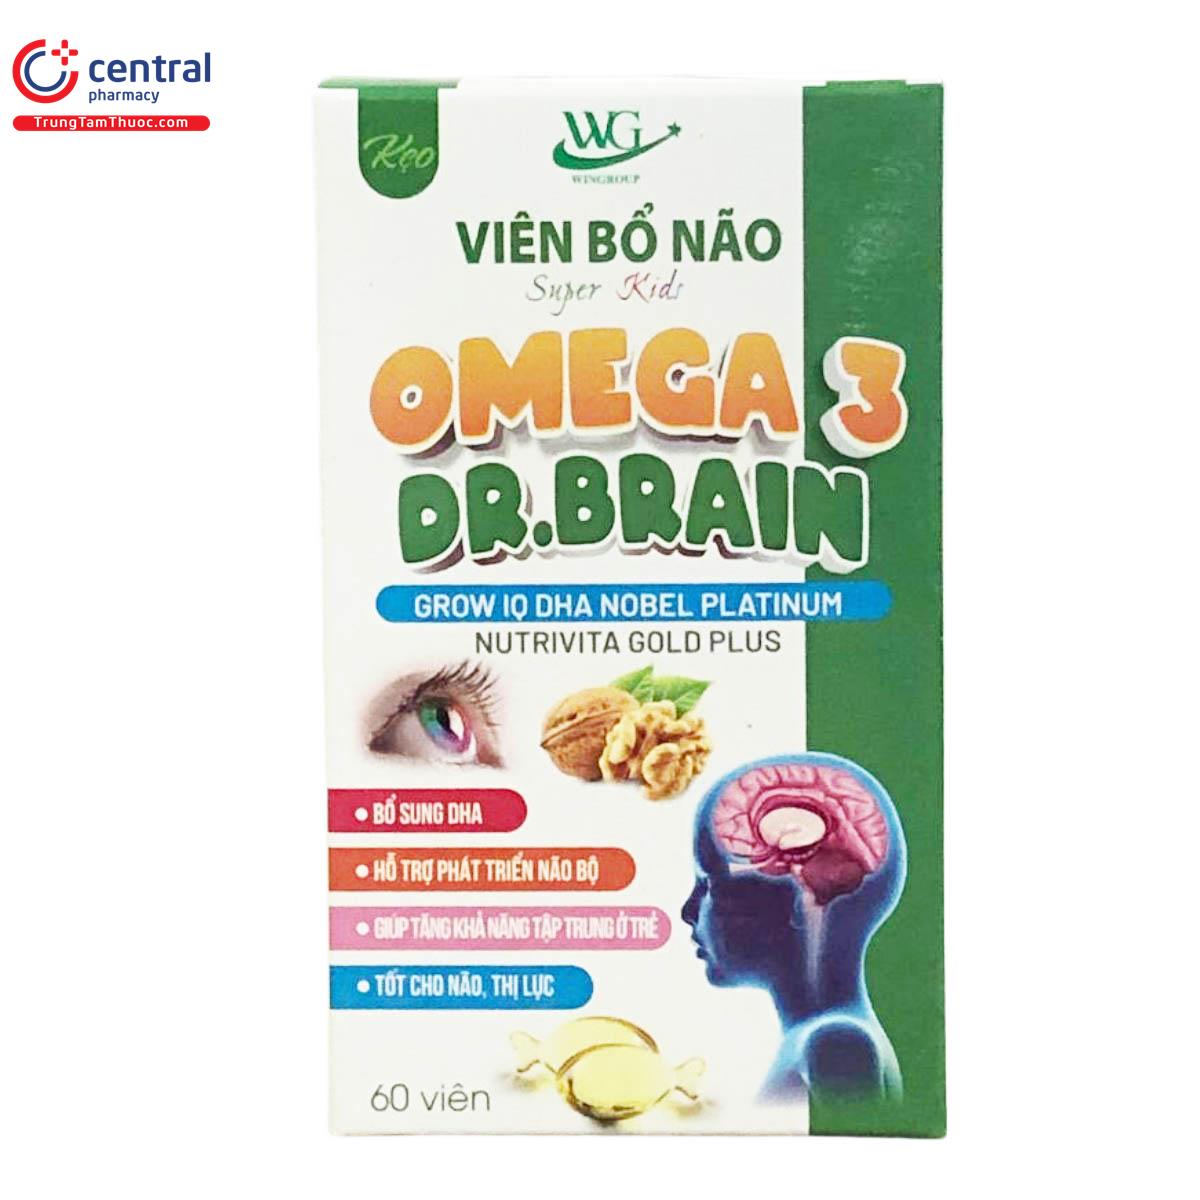 omega 3 dr brain 6 C1608